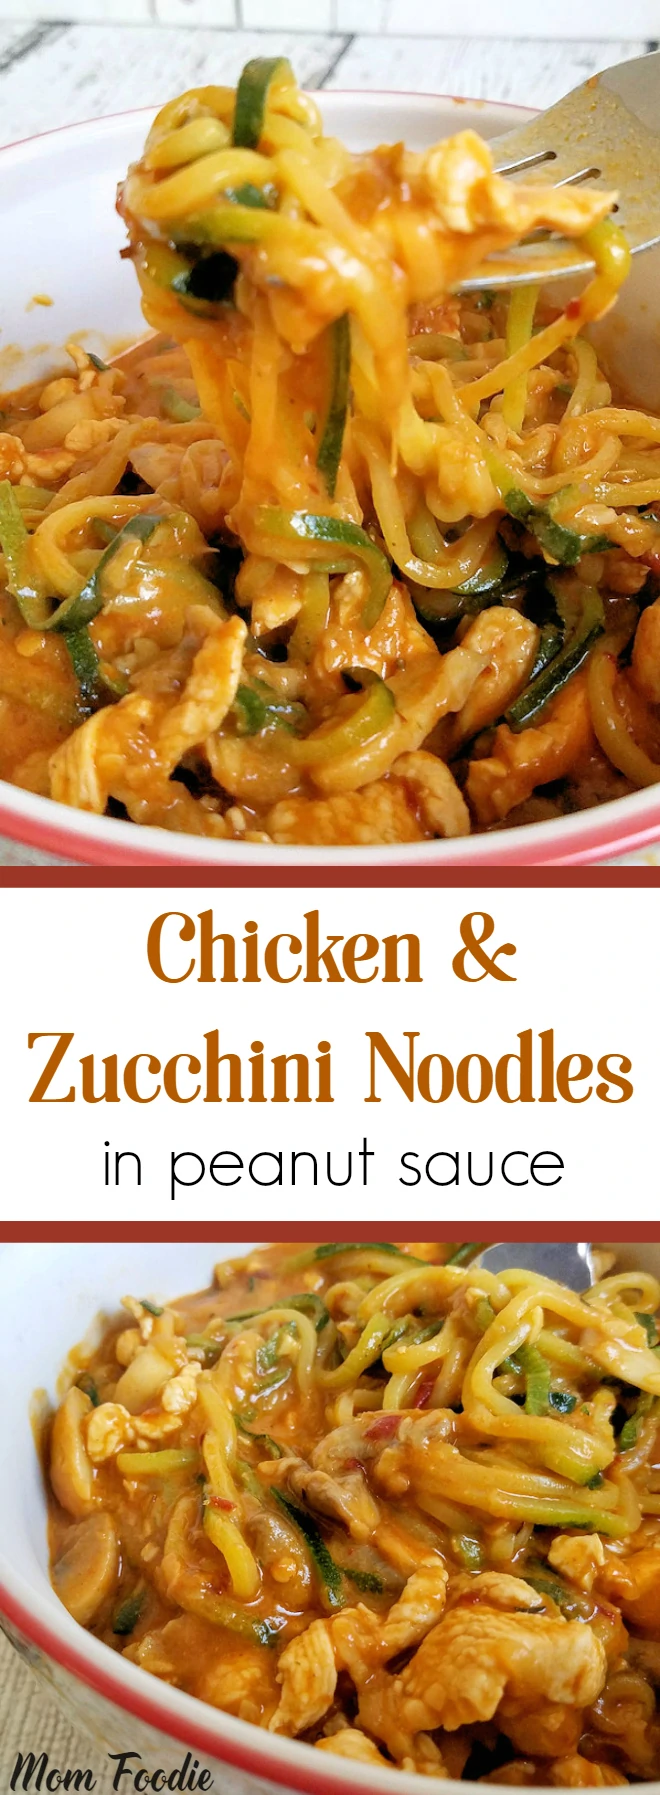 Chicken & Zucchini Noodles in Peanut Sauce - Stir Fry Recipe